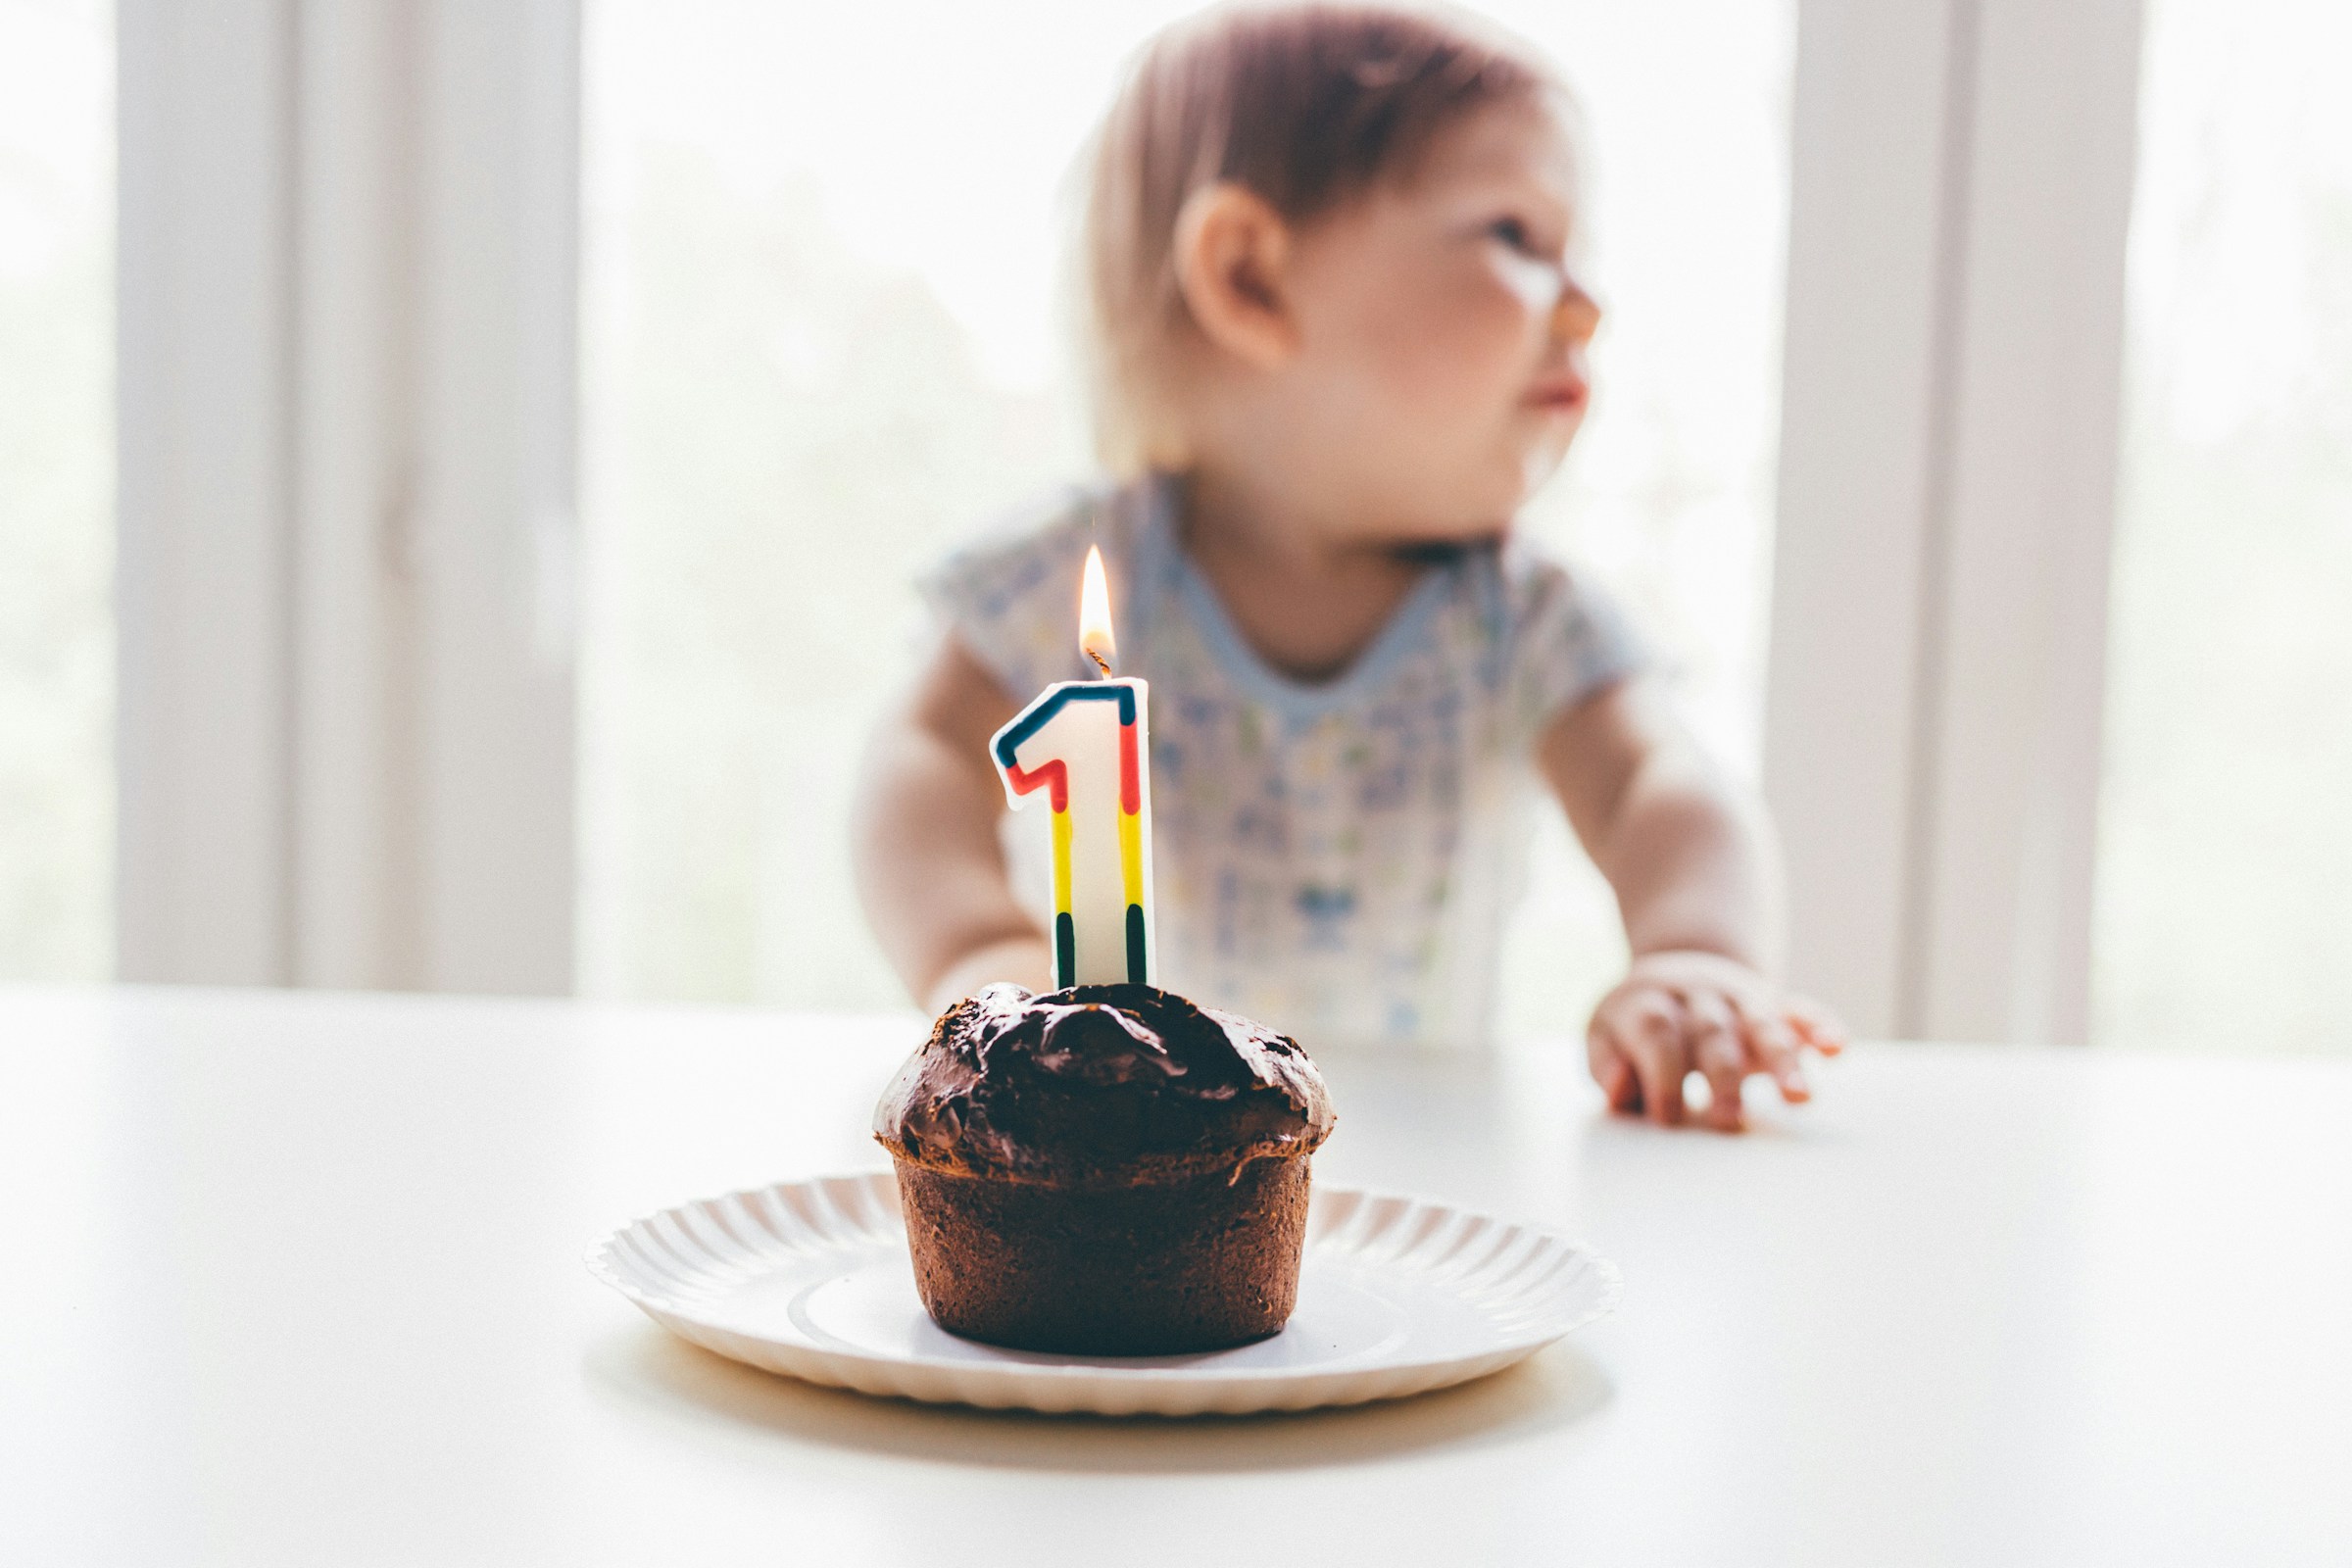 A little boy's birthday | Source: Unsplash